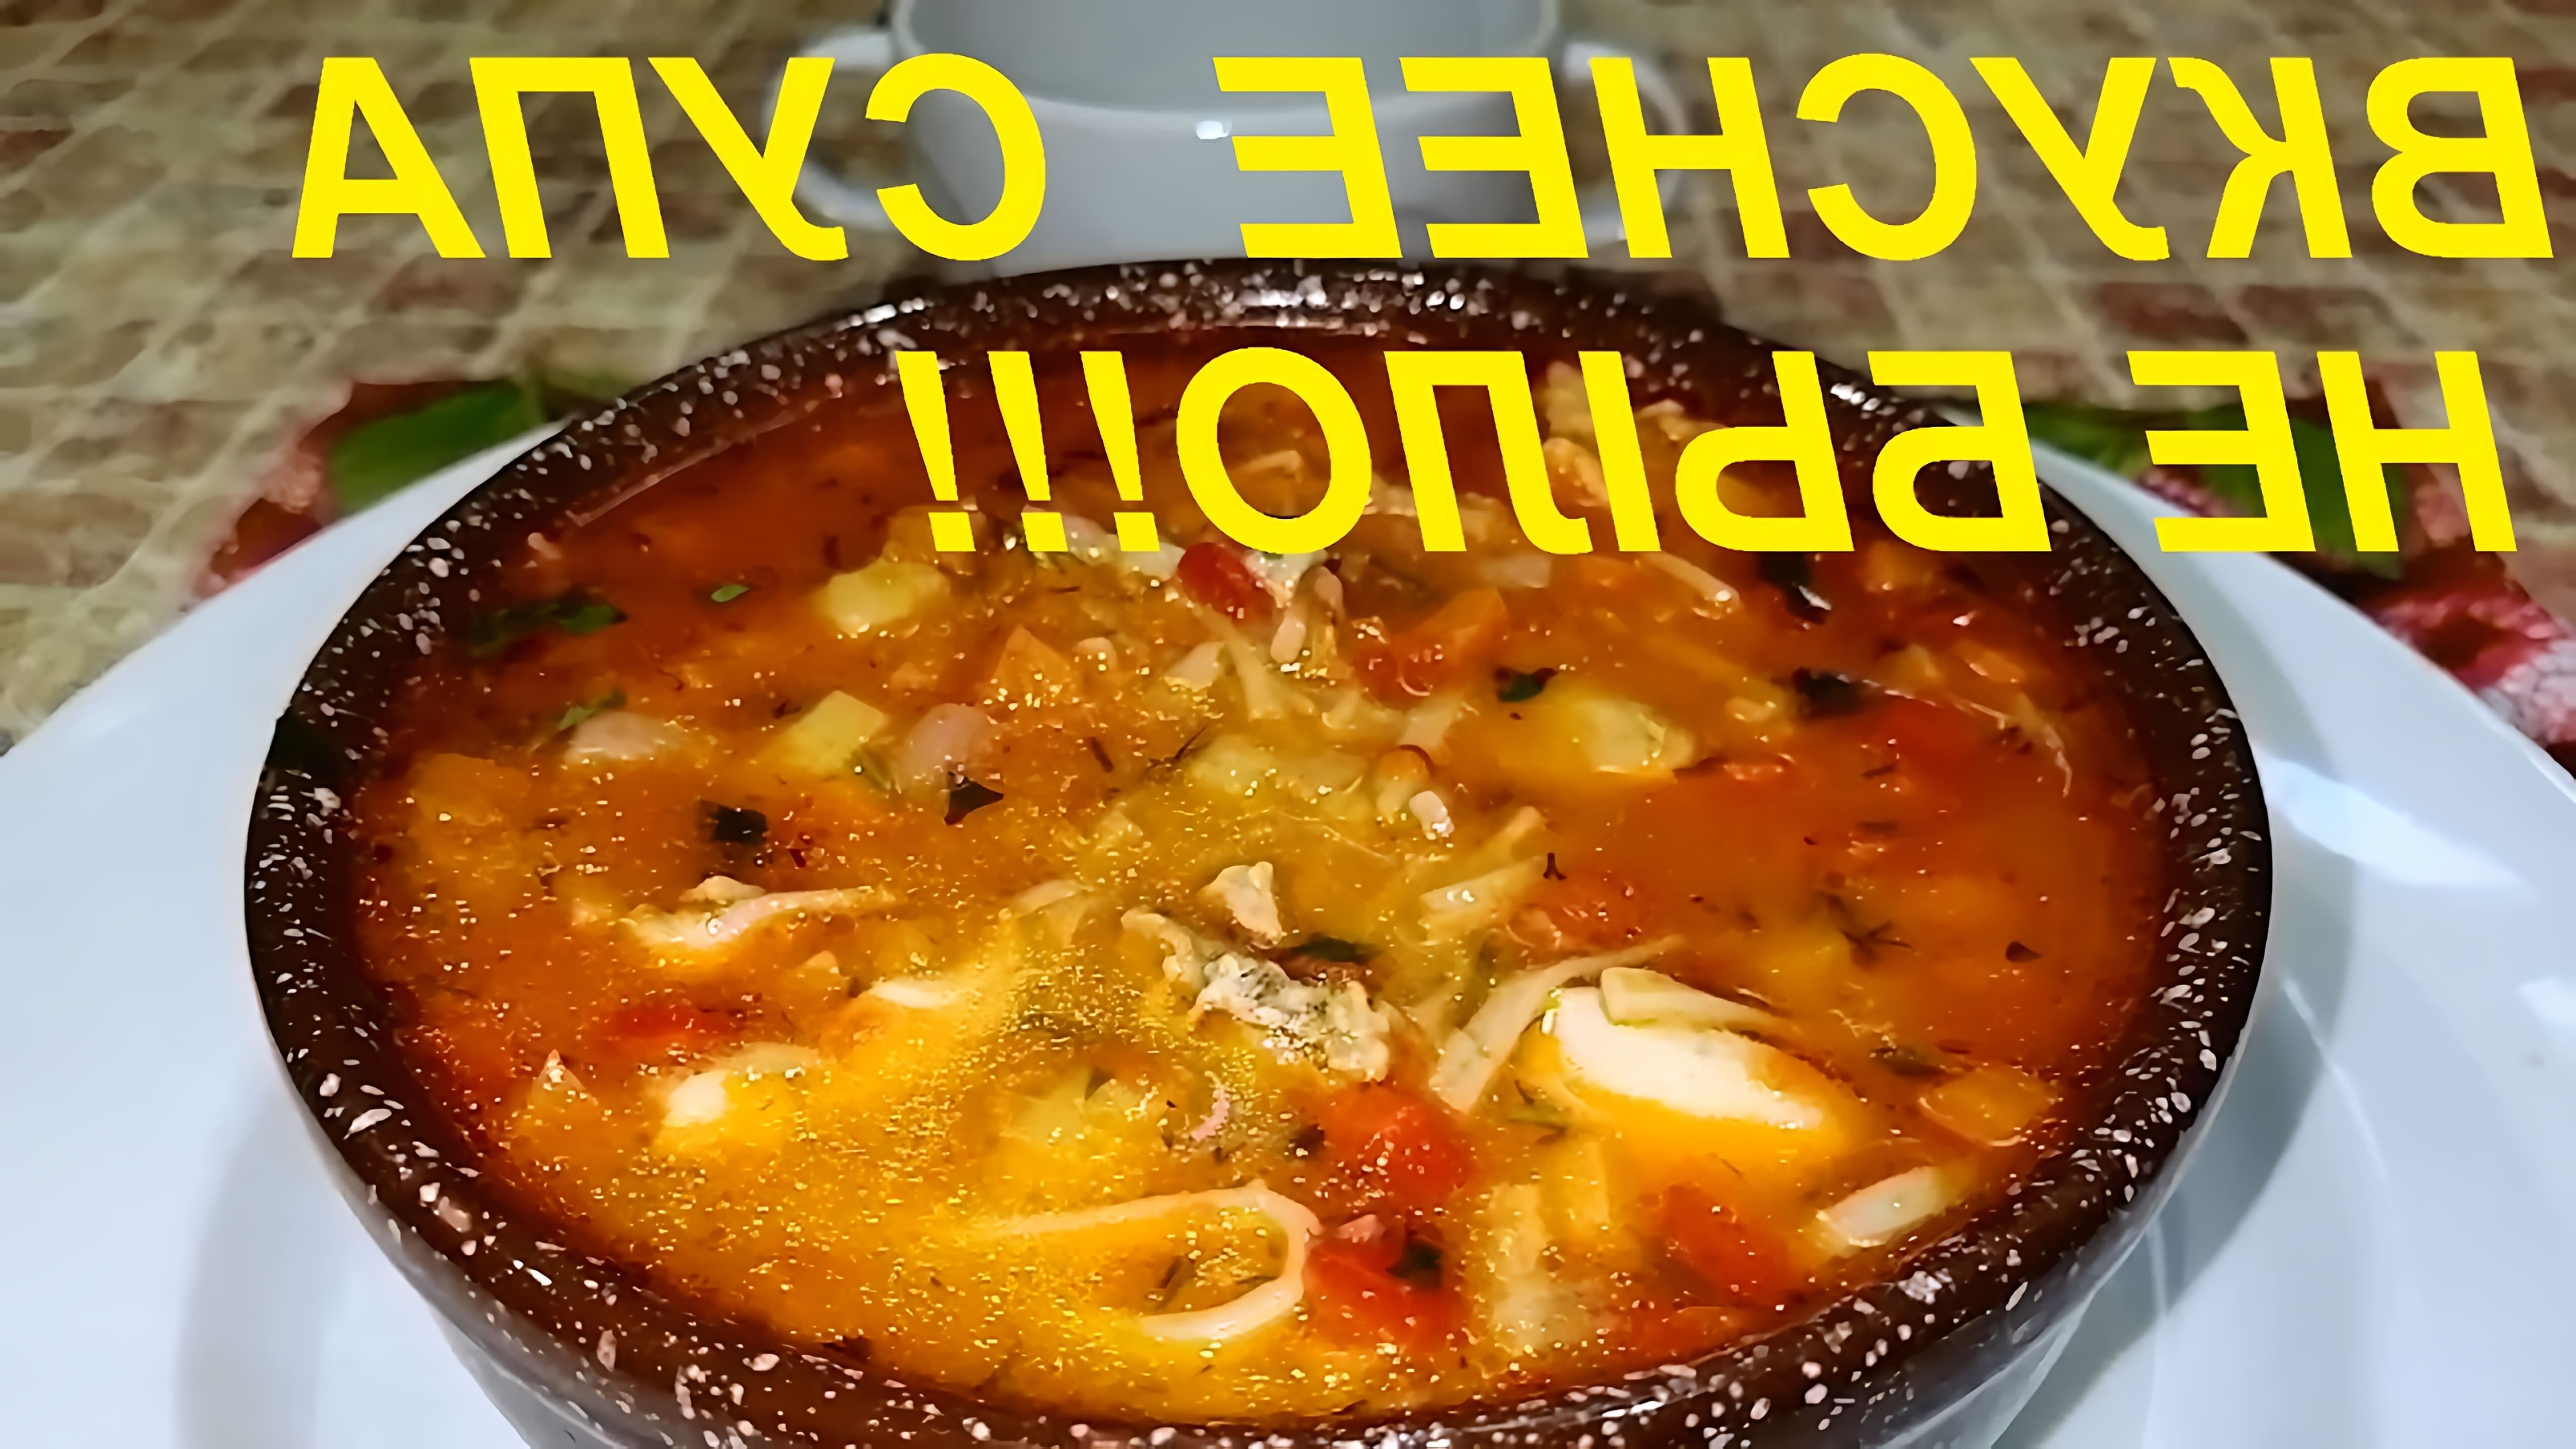 Видео как приготовить очень вкусный и полезный суп из простых ингредиентов, таких как курица, овощи и паста